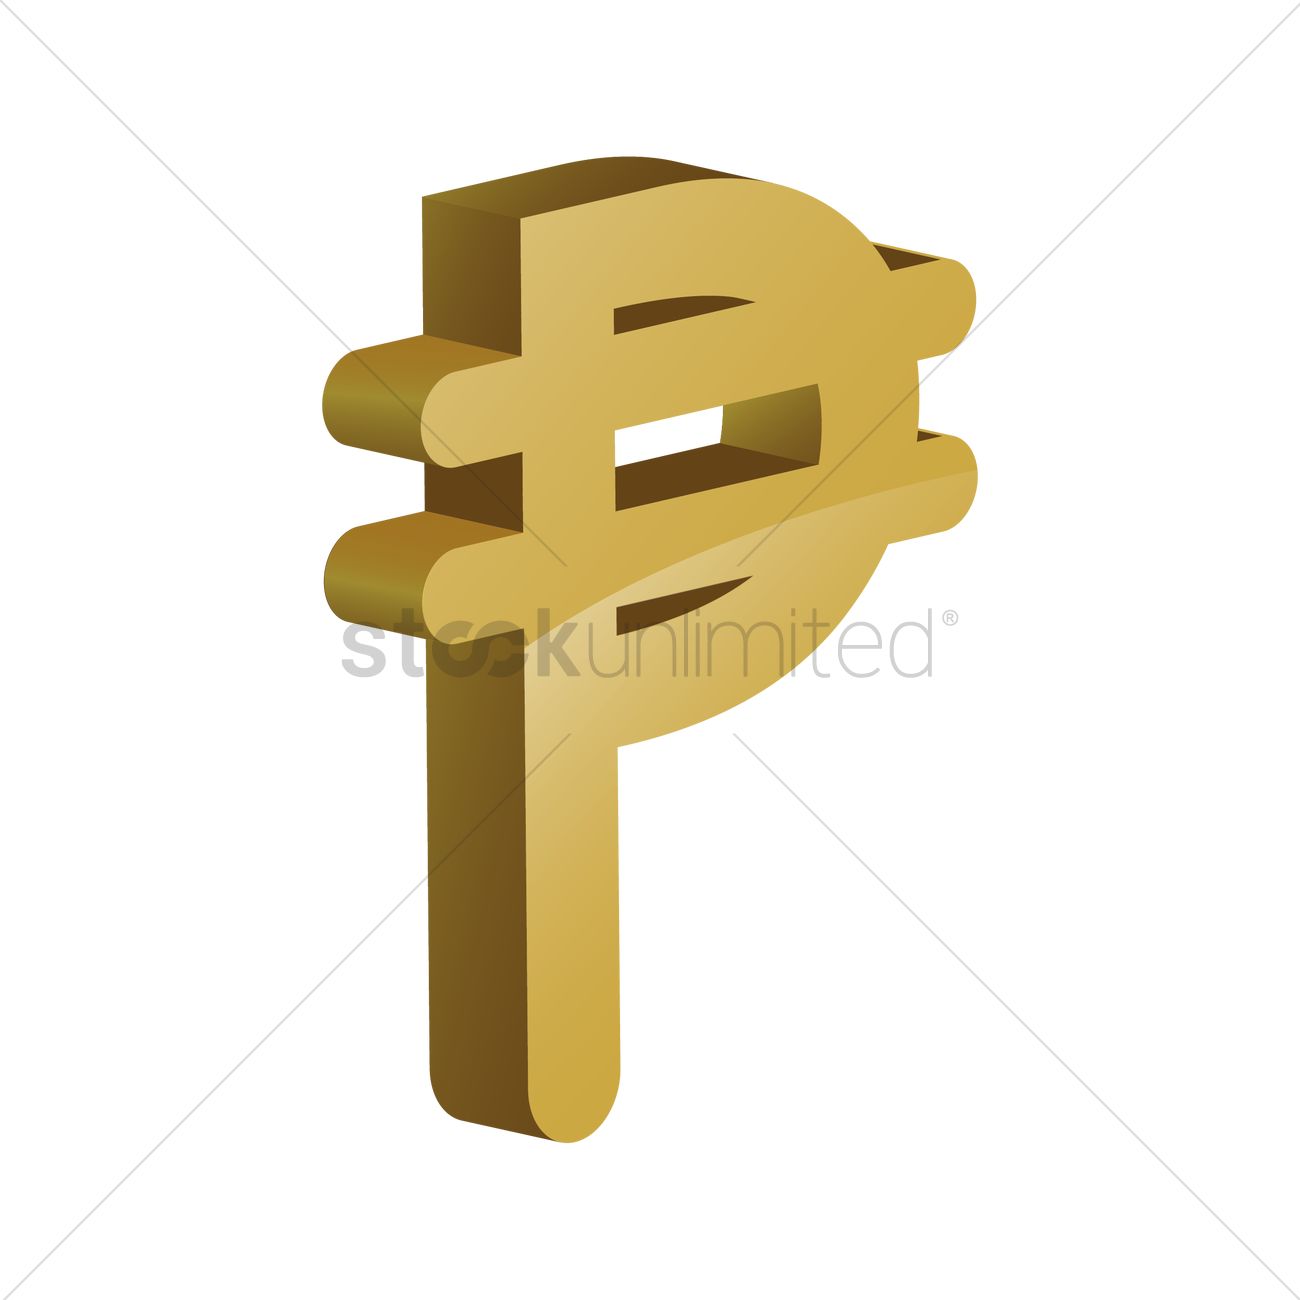 peso symbol vector graphic